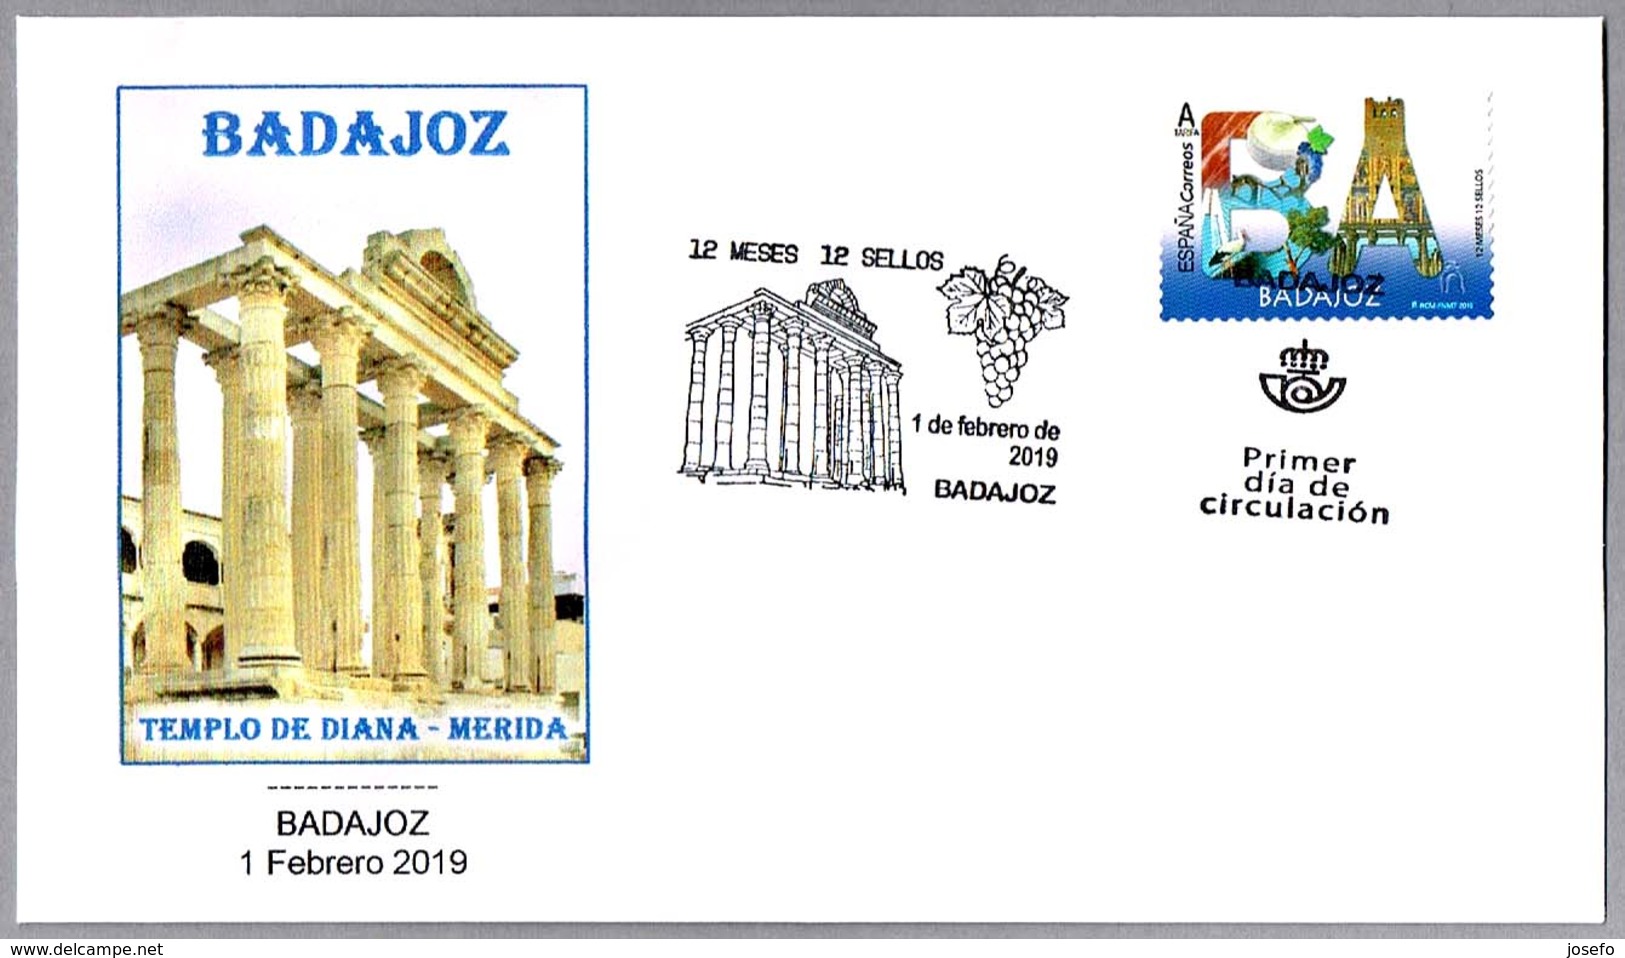 12 MESES - 12 SELLOS - BADAJOZ - TEMPLO DE DIANA (MERIDA). SPD/FDC Badajoz, Extremadura, 2019 - Archeologia